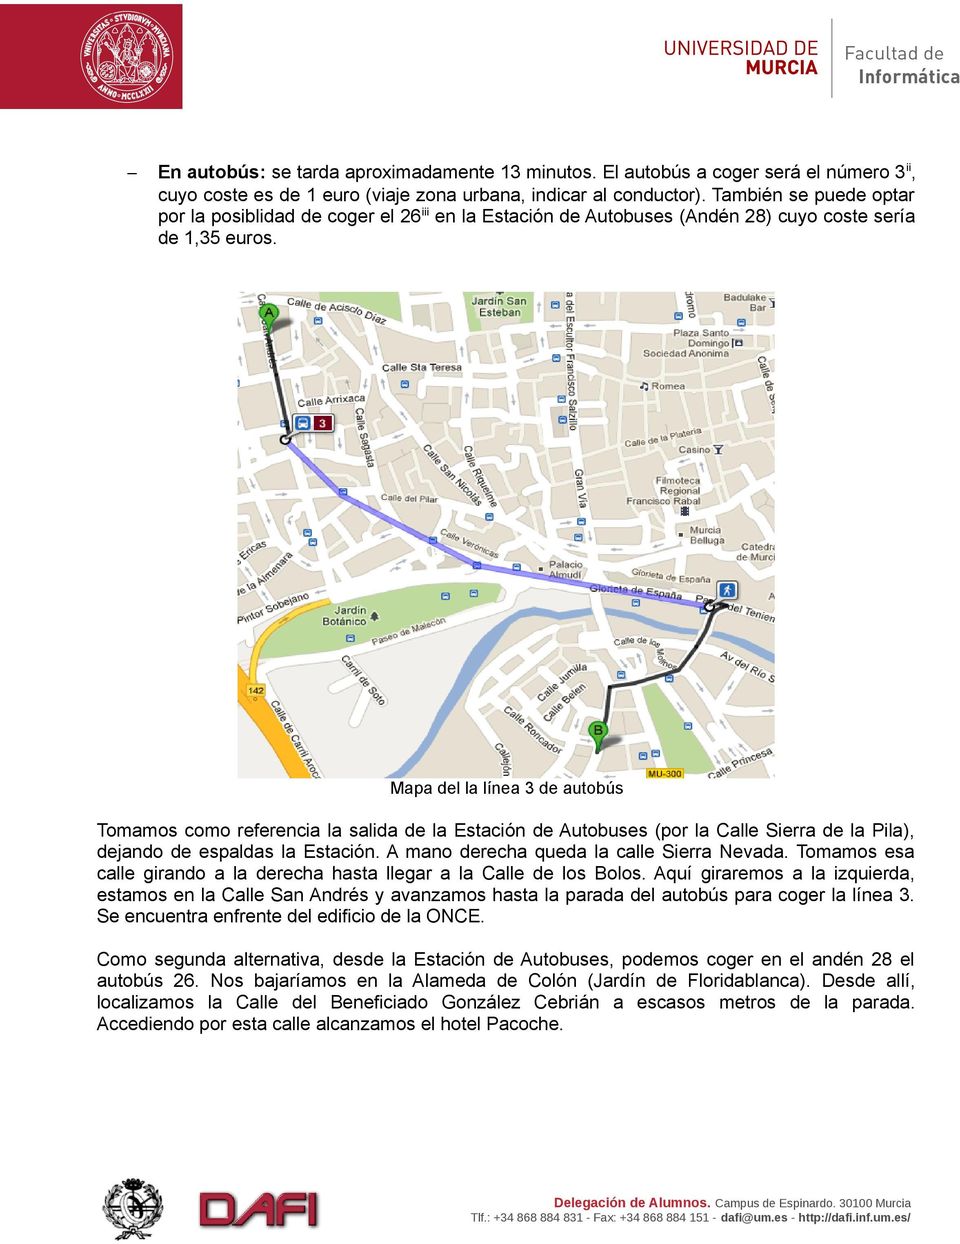 Mapa del la línea 3 de autobús Tomamos como referencia la salida de la Estación de Autobuses (por la Calle Sierra de la Pila), dejando de espaldas la Estación.